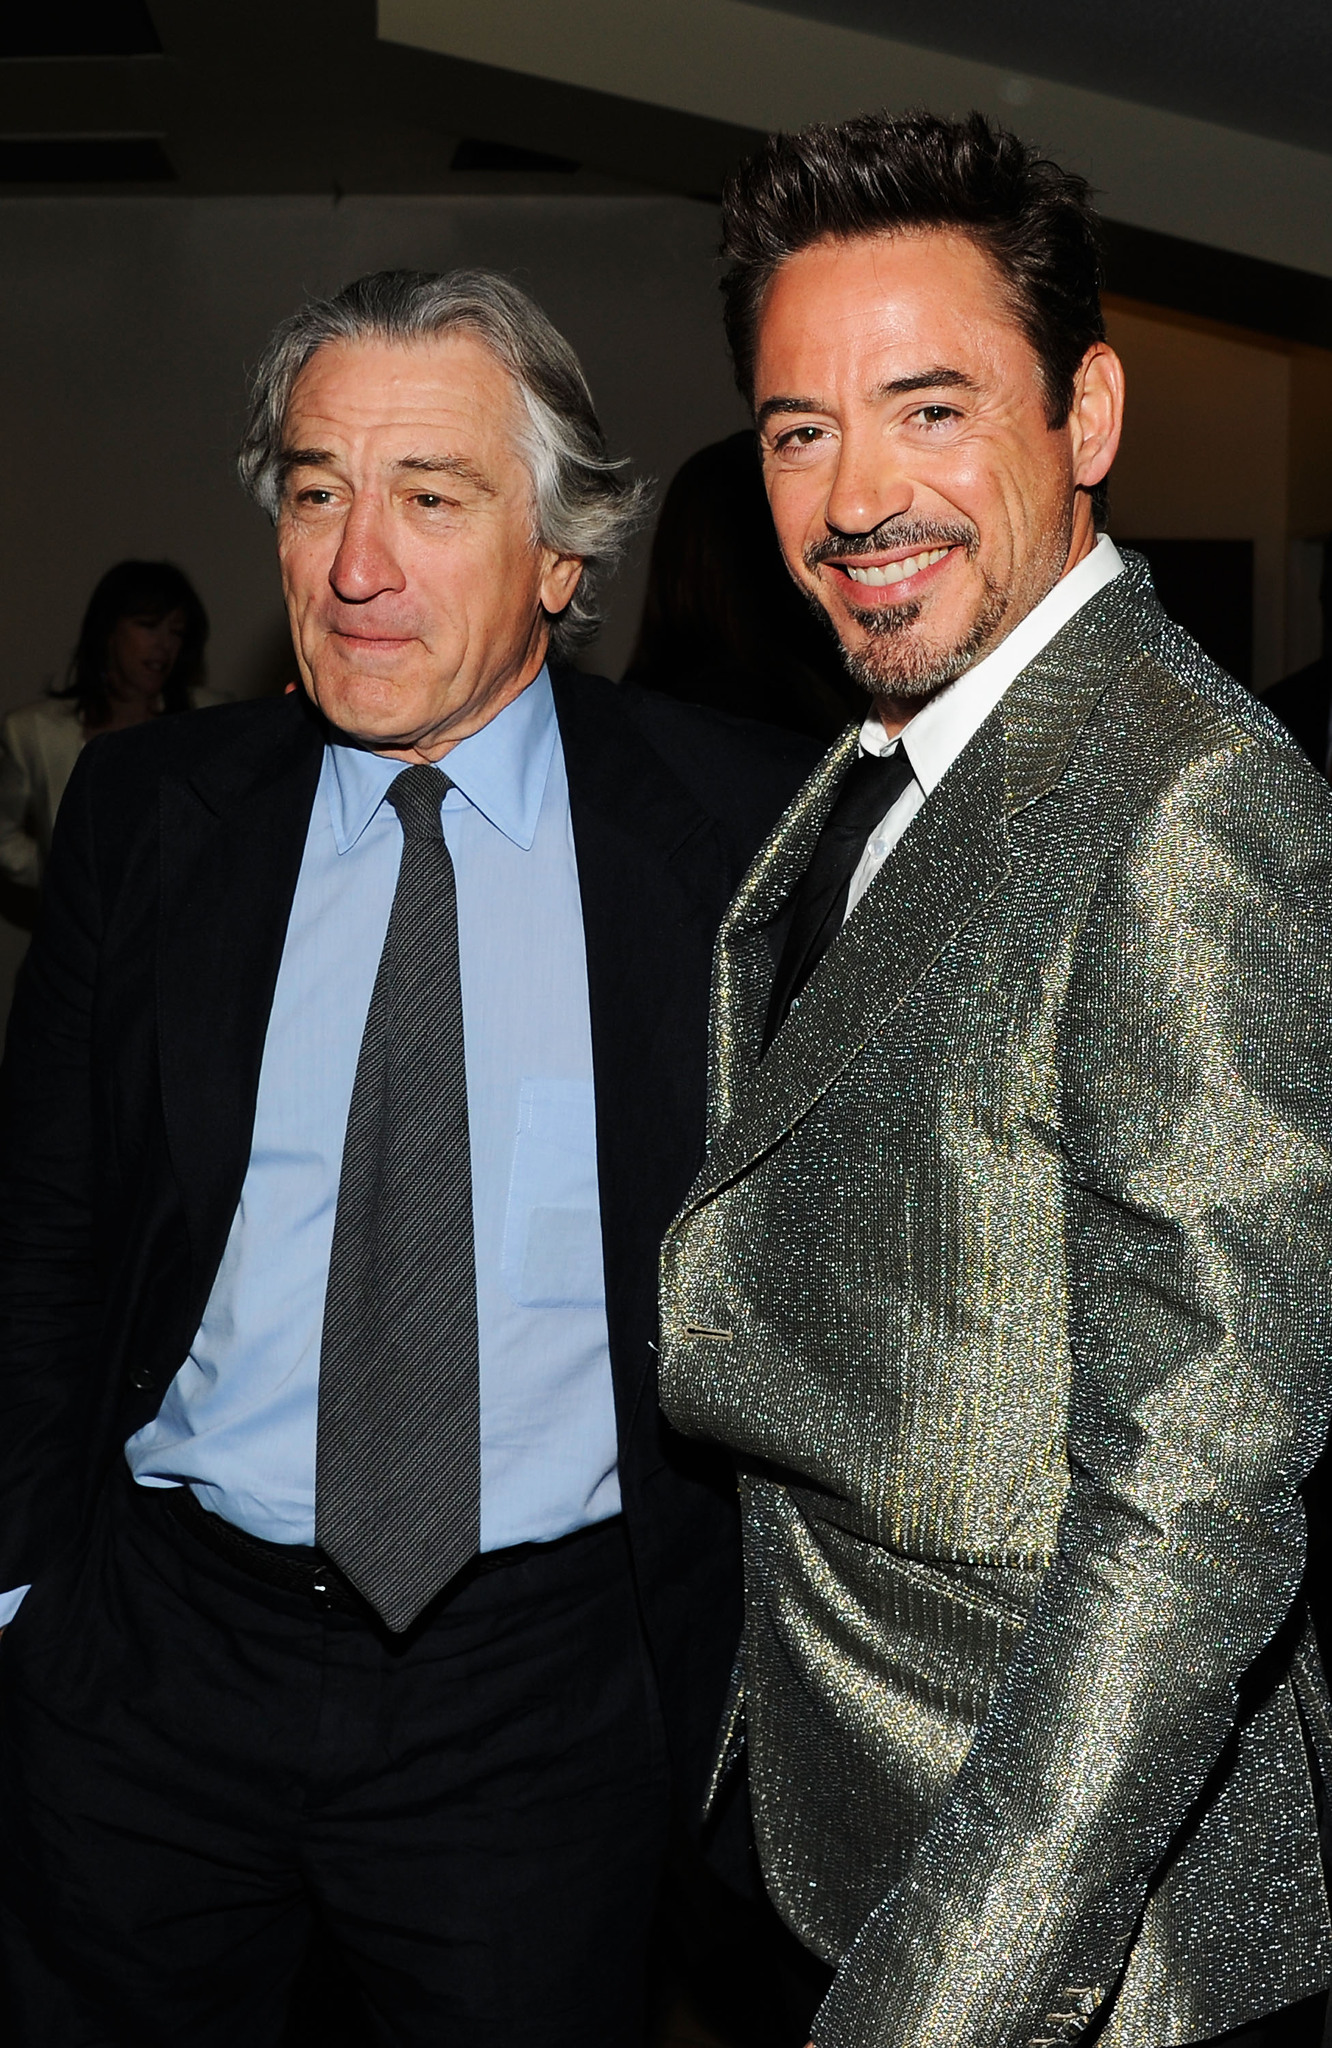 Robert De Niro and Robert Downey Jr. at event of Kersytojai (2012)